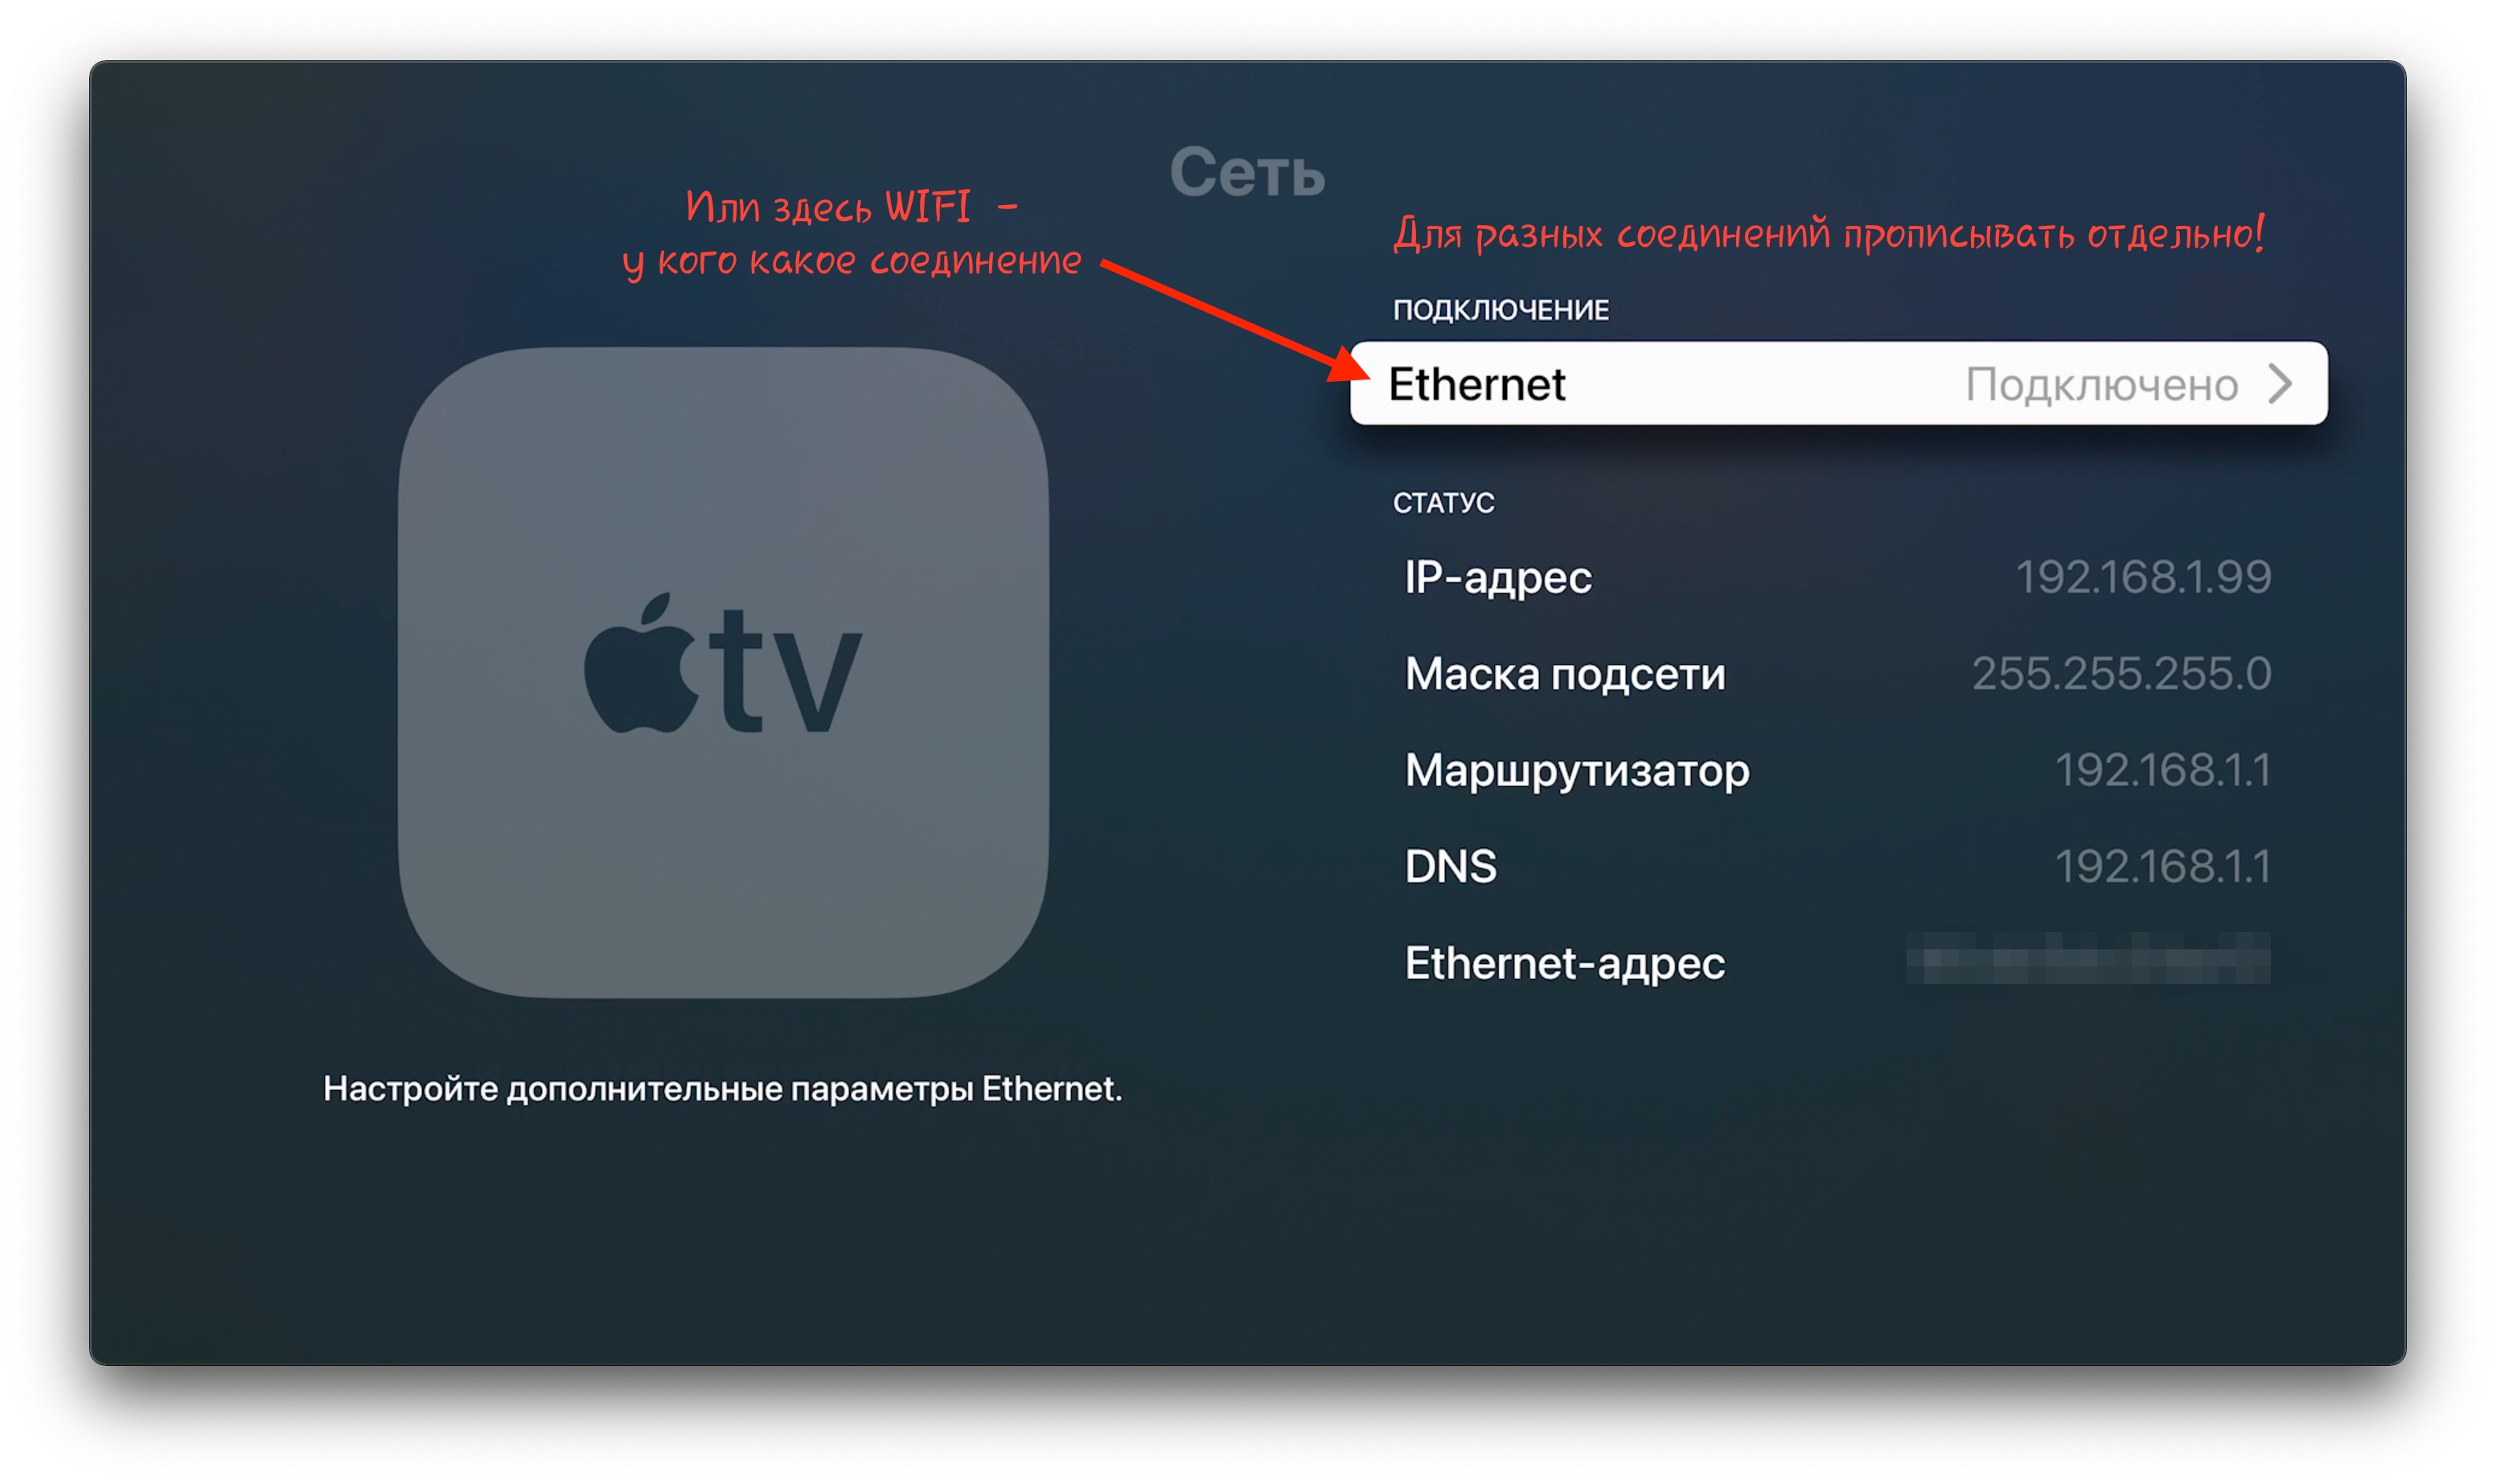 Инструкция для установки приложения на Apple TV 4/4K через подмену DNS (YH)  – Telegraph